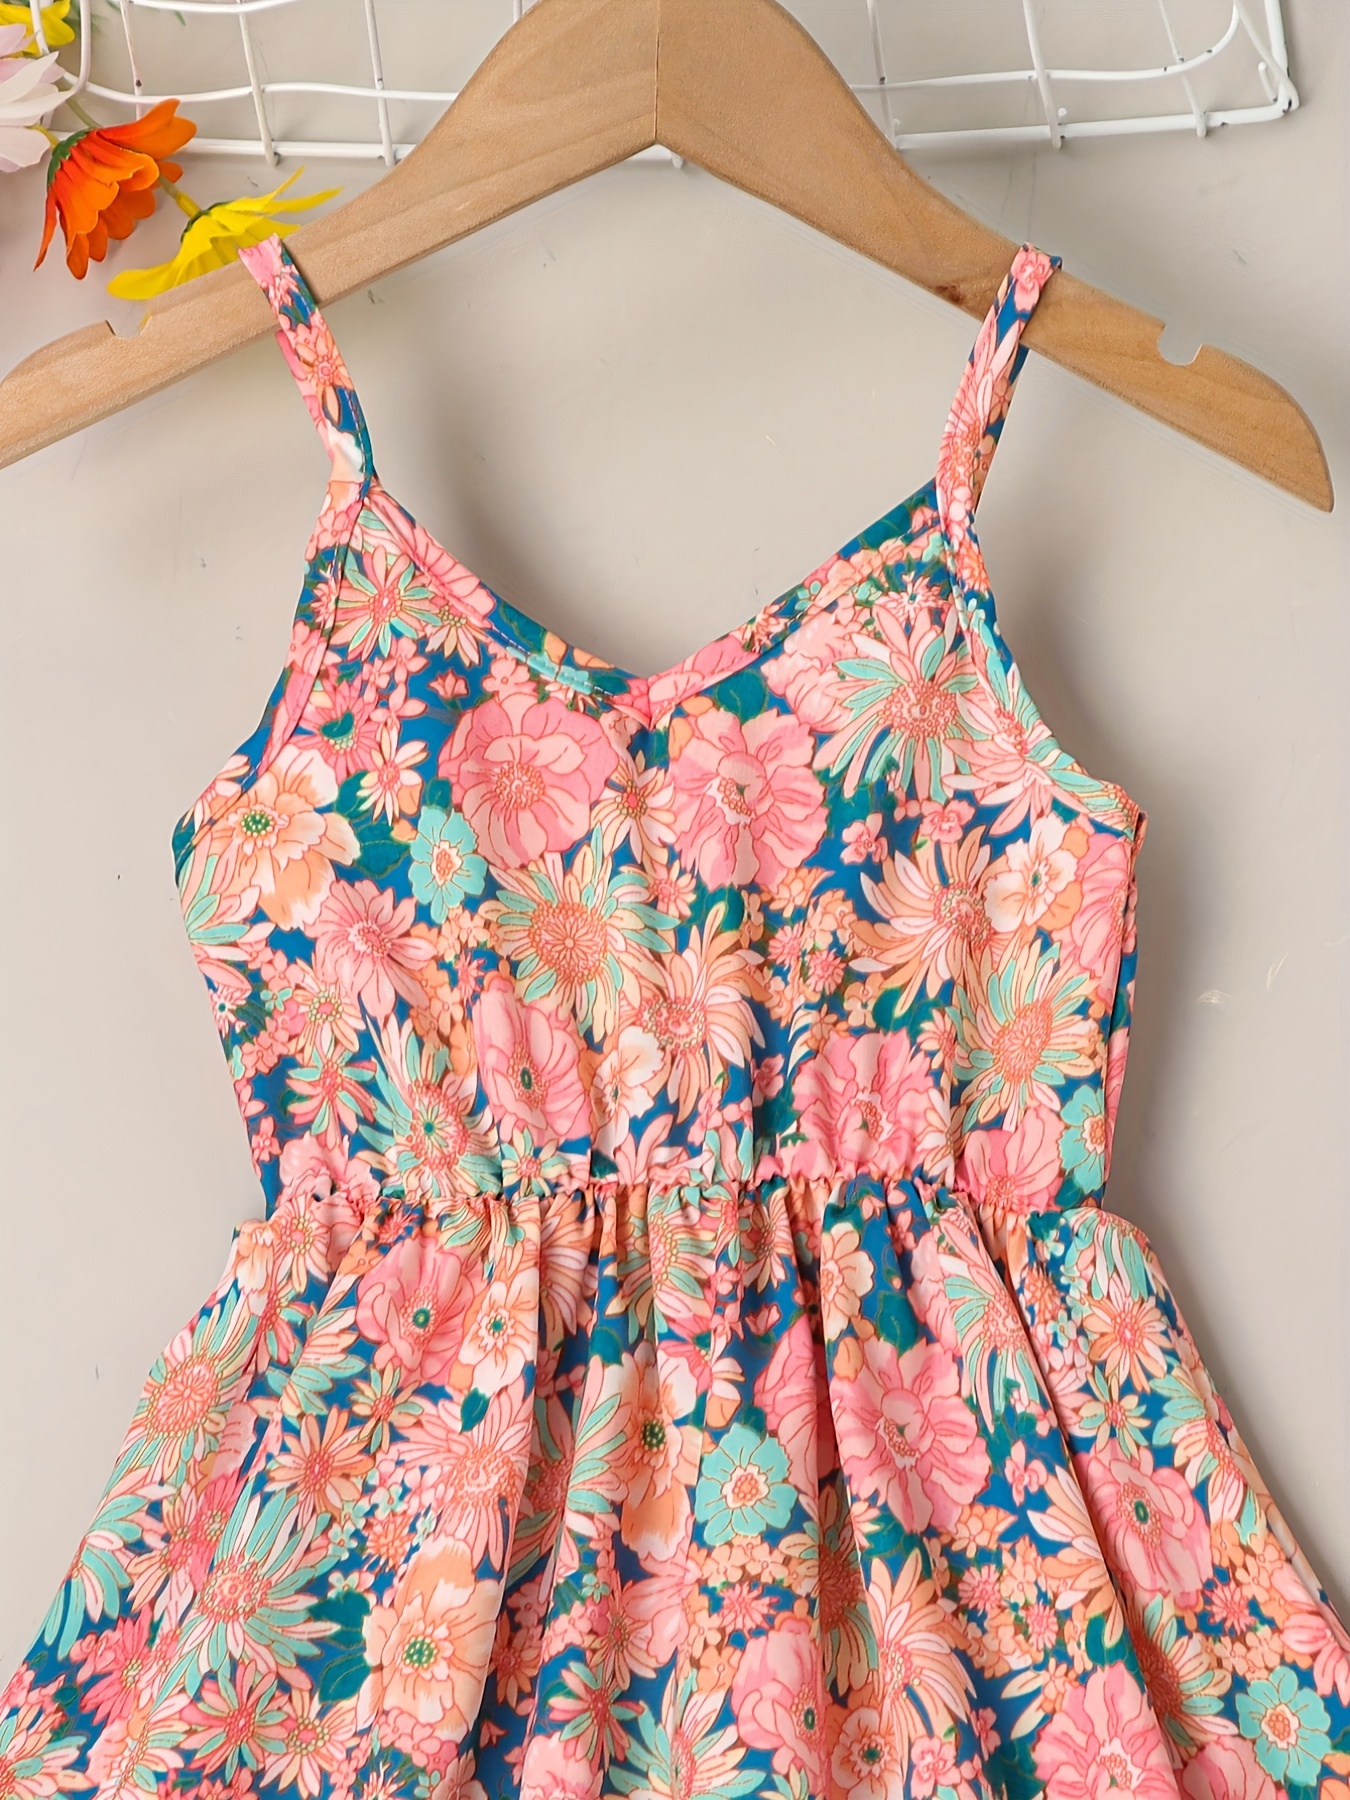 little girls cute sundress floral pattern party beach dress v neck elastic waist camisole dress for summer details 12